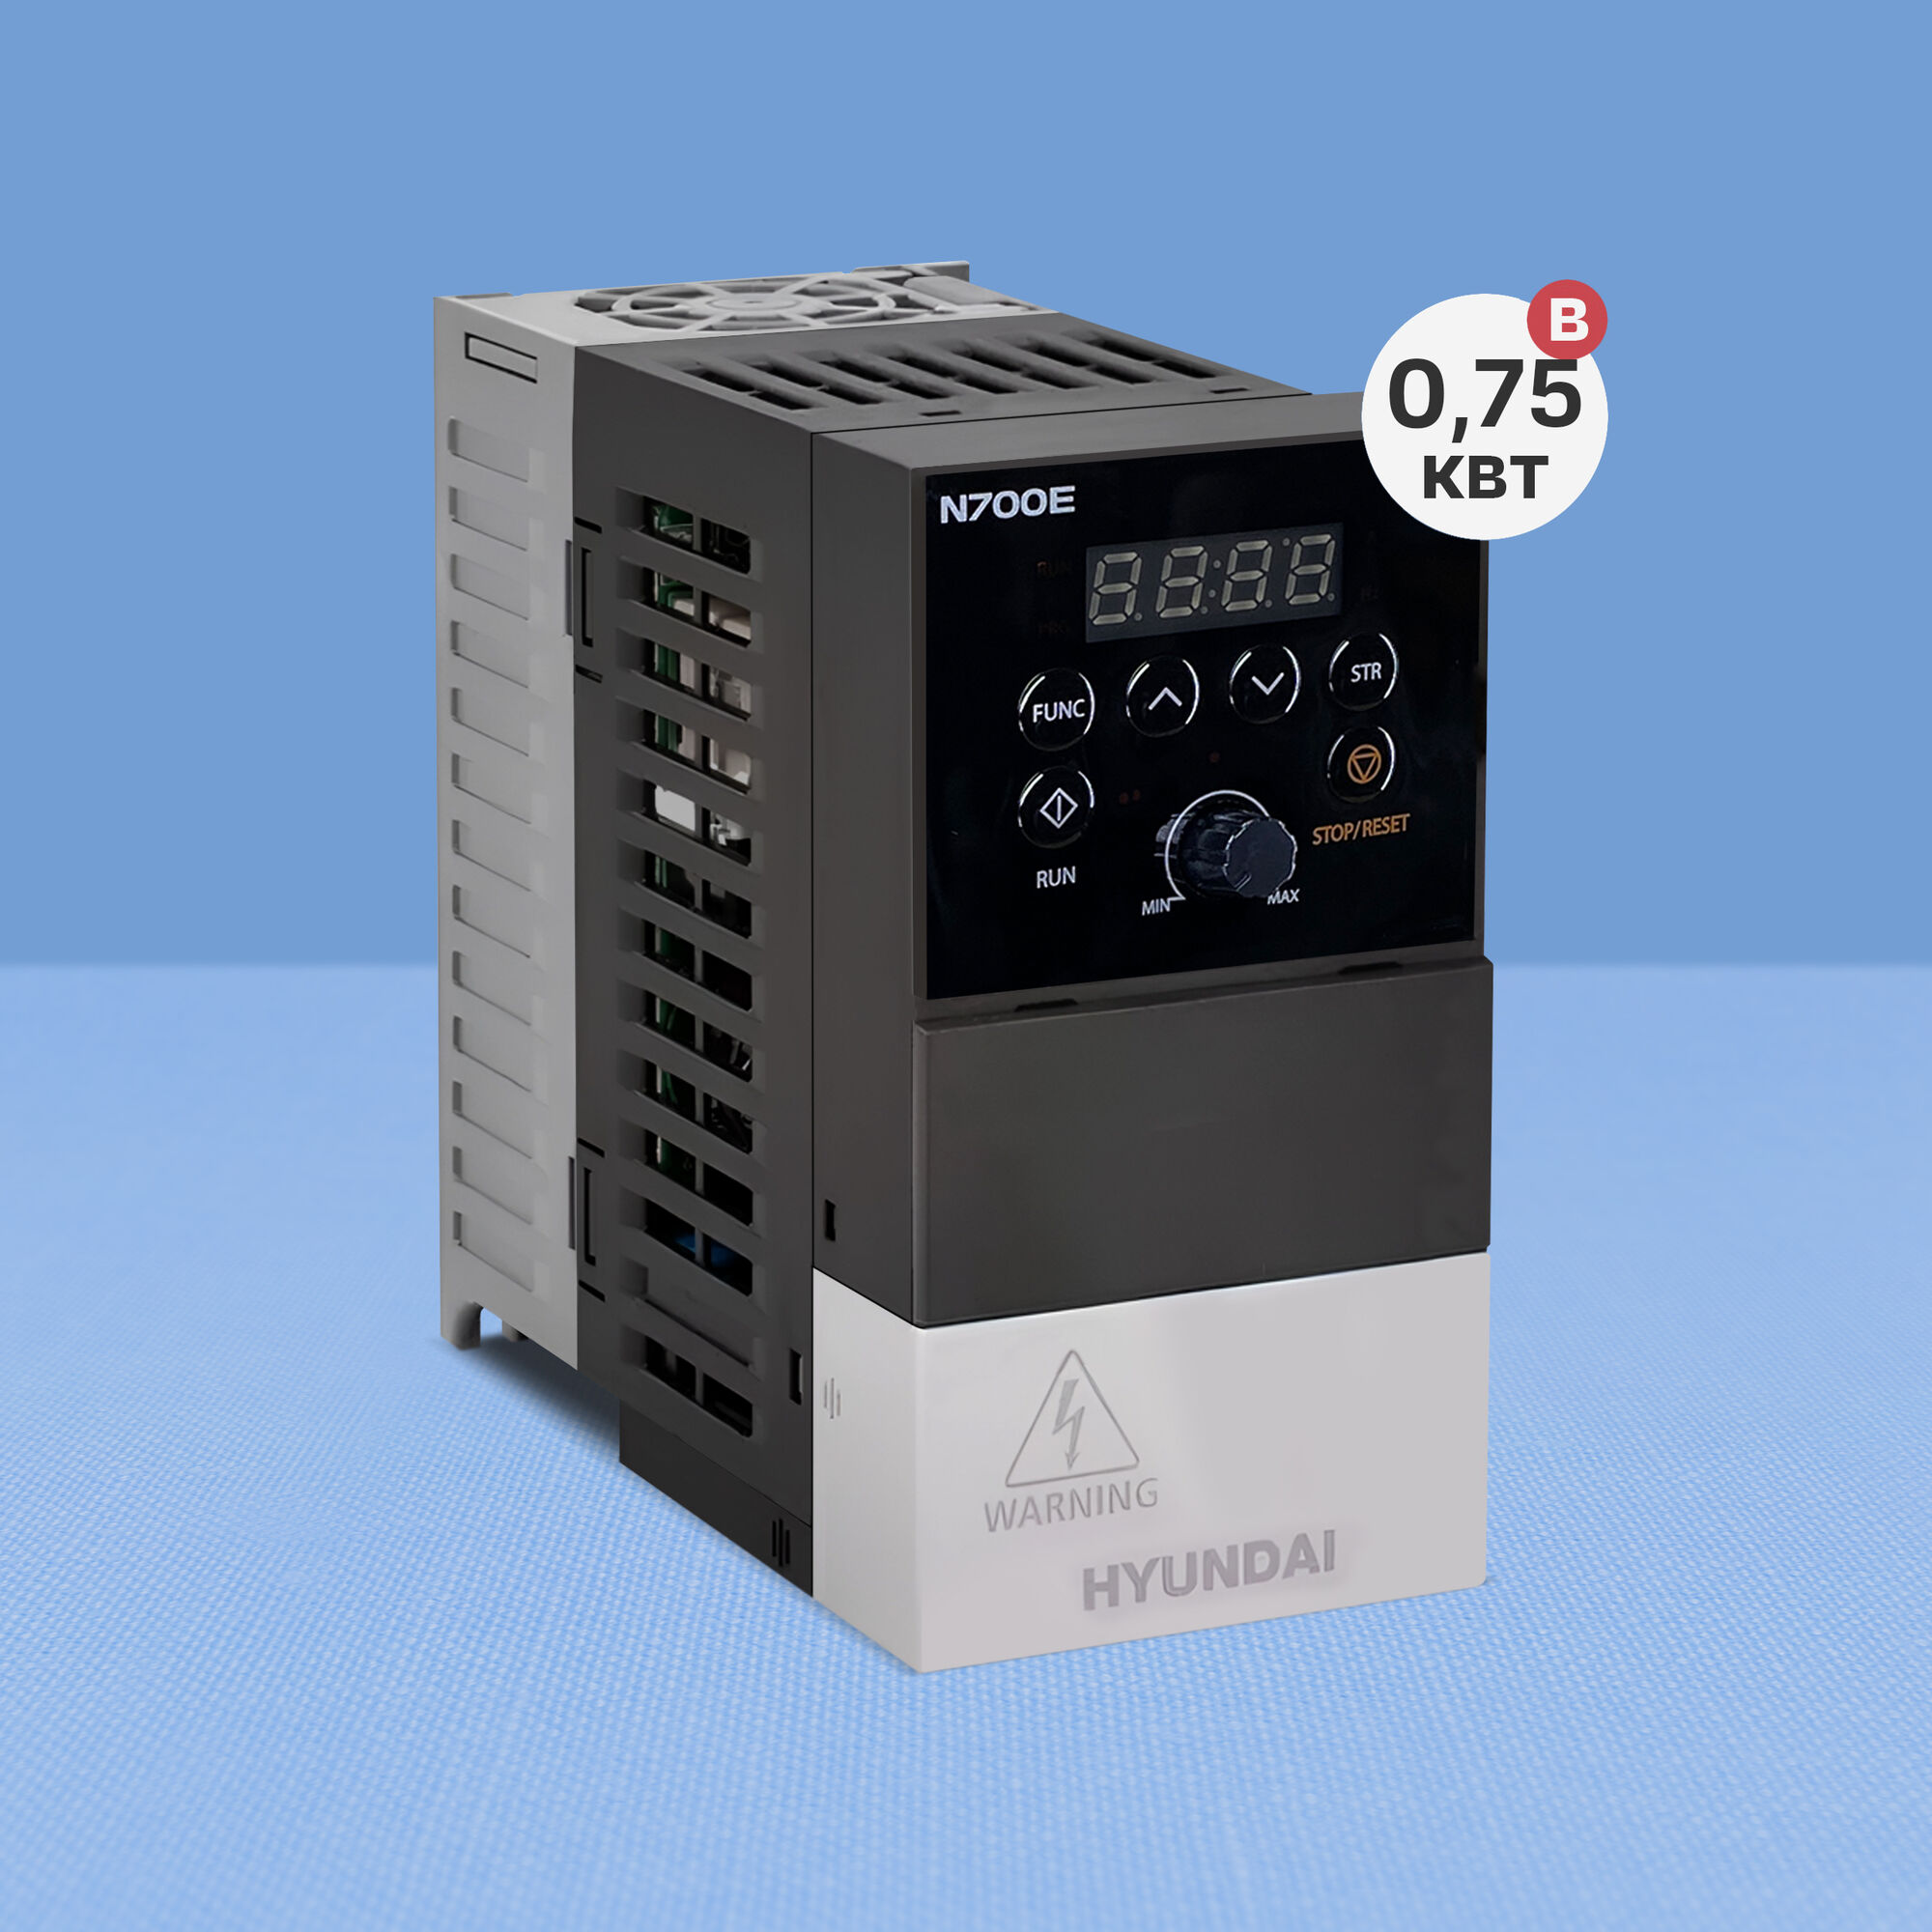 Частотный преобразователь Hyundai N700E 007SF (0.75 кВт, 220 В)